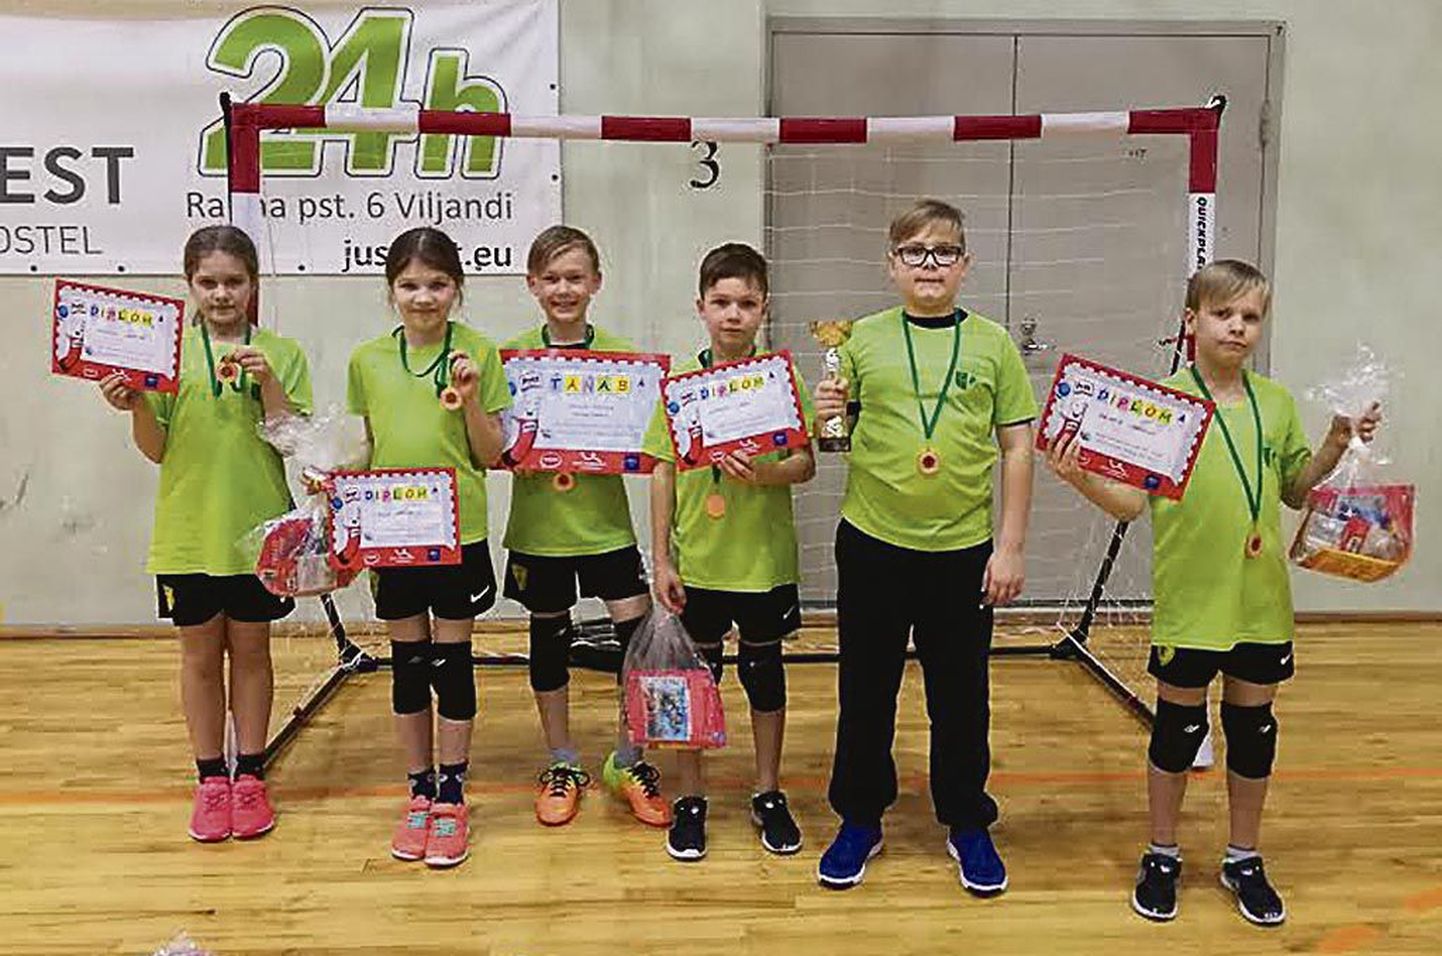 Paikuse põhikooli käsipallivõistkond võitis üle-eestilisel turniiril igati hinnatava kolmanda koha.